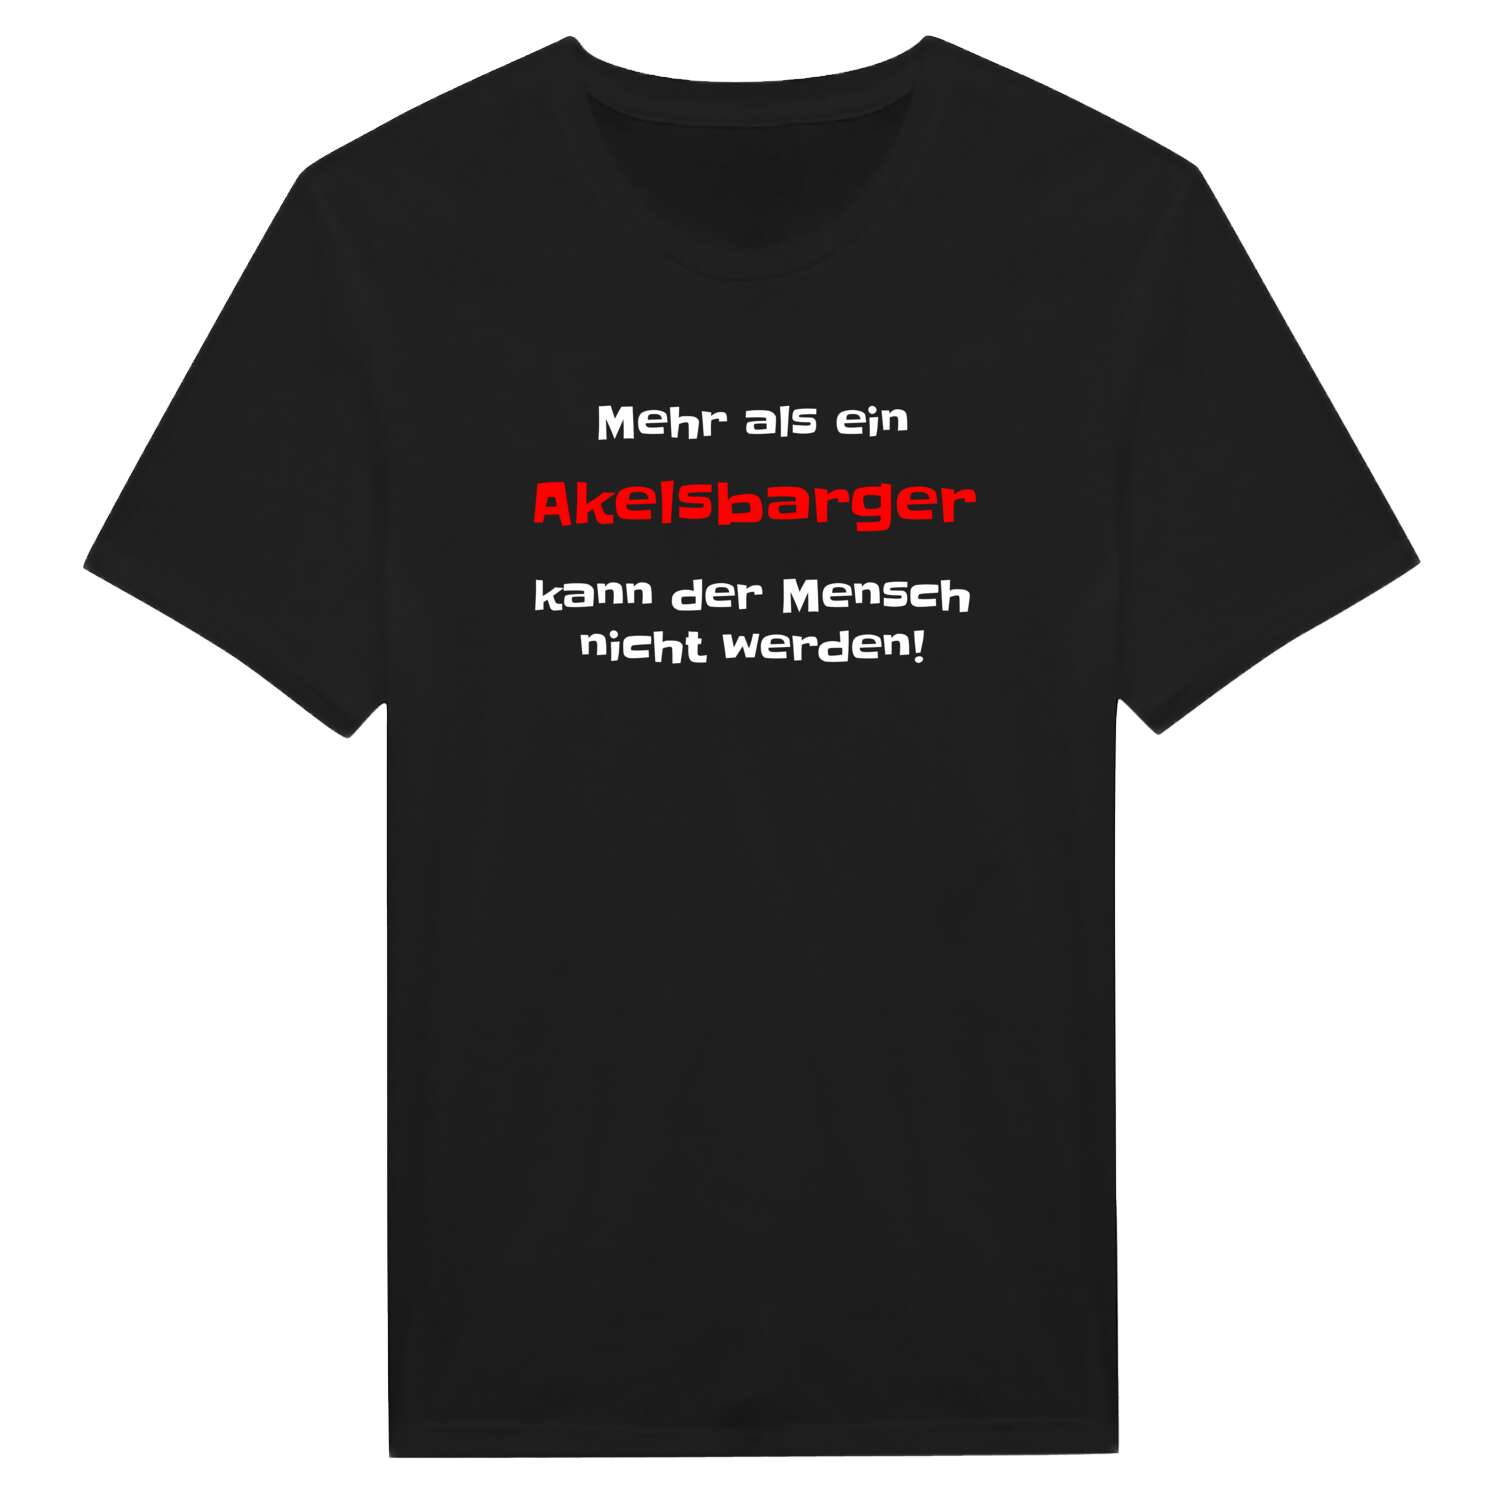 Akelsbarg T-Shirt »Mehr als ein«